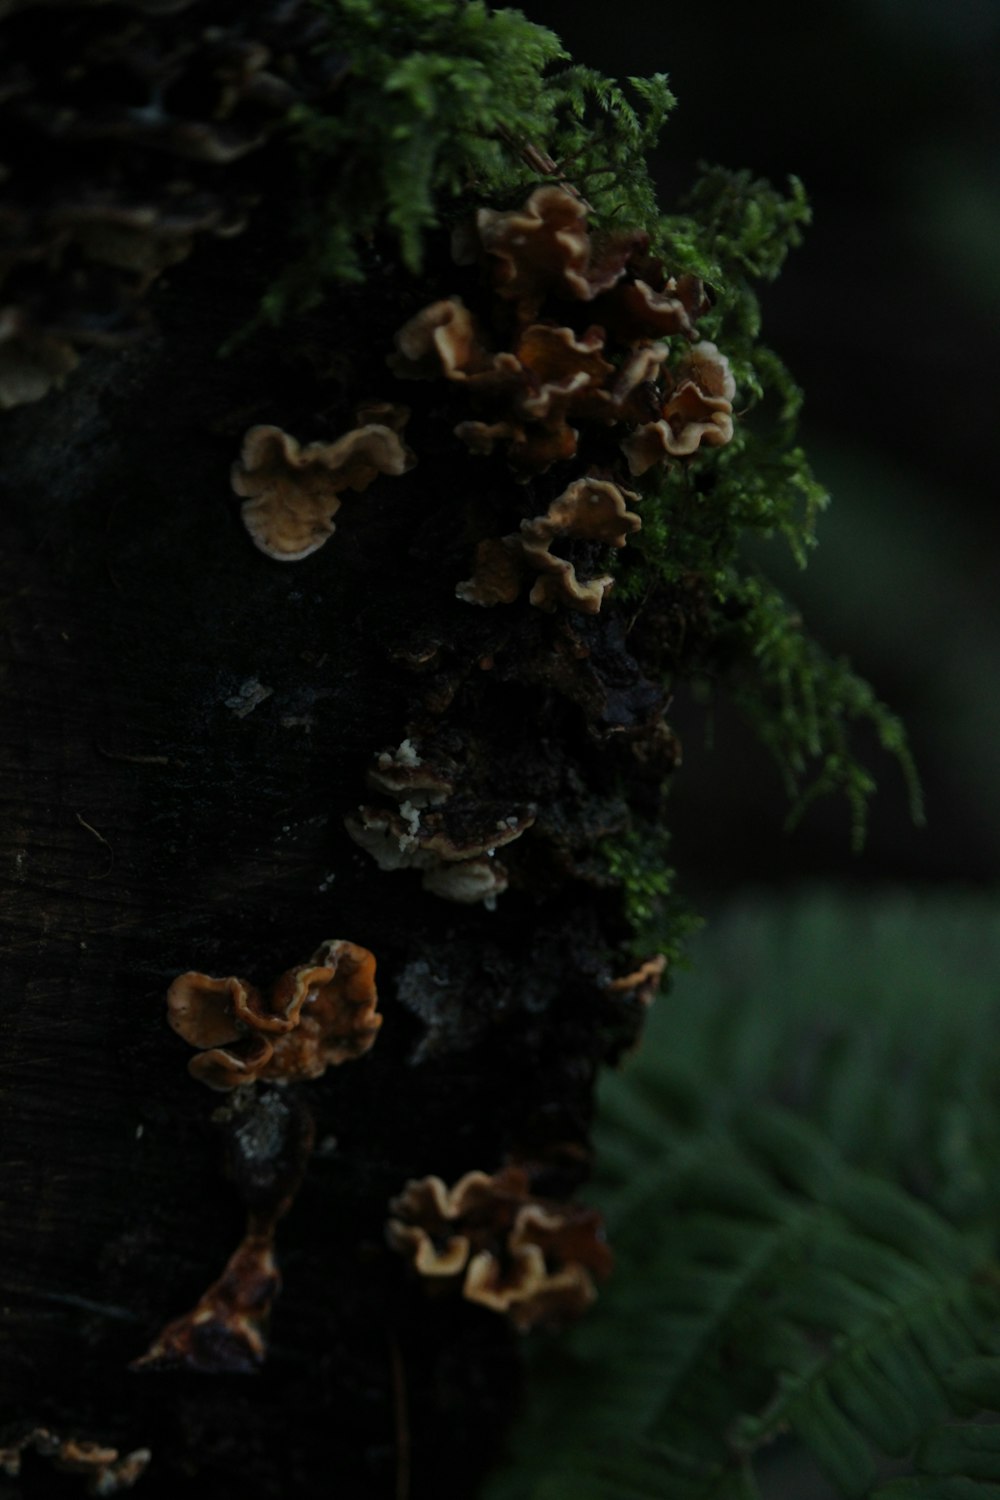 brown mushroom on brown wooden log